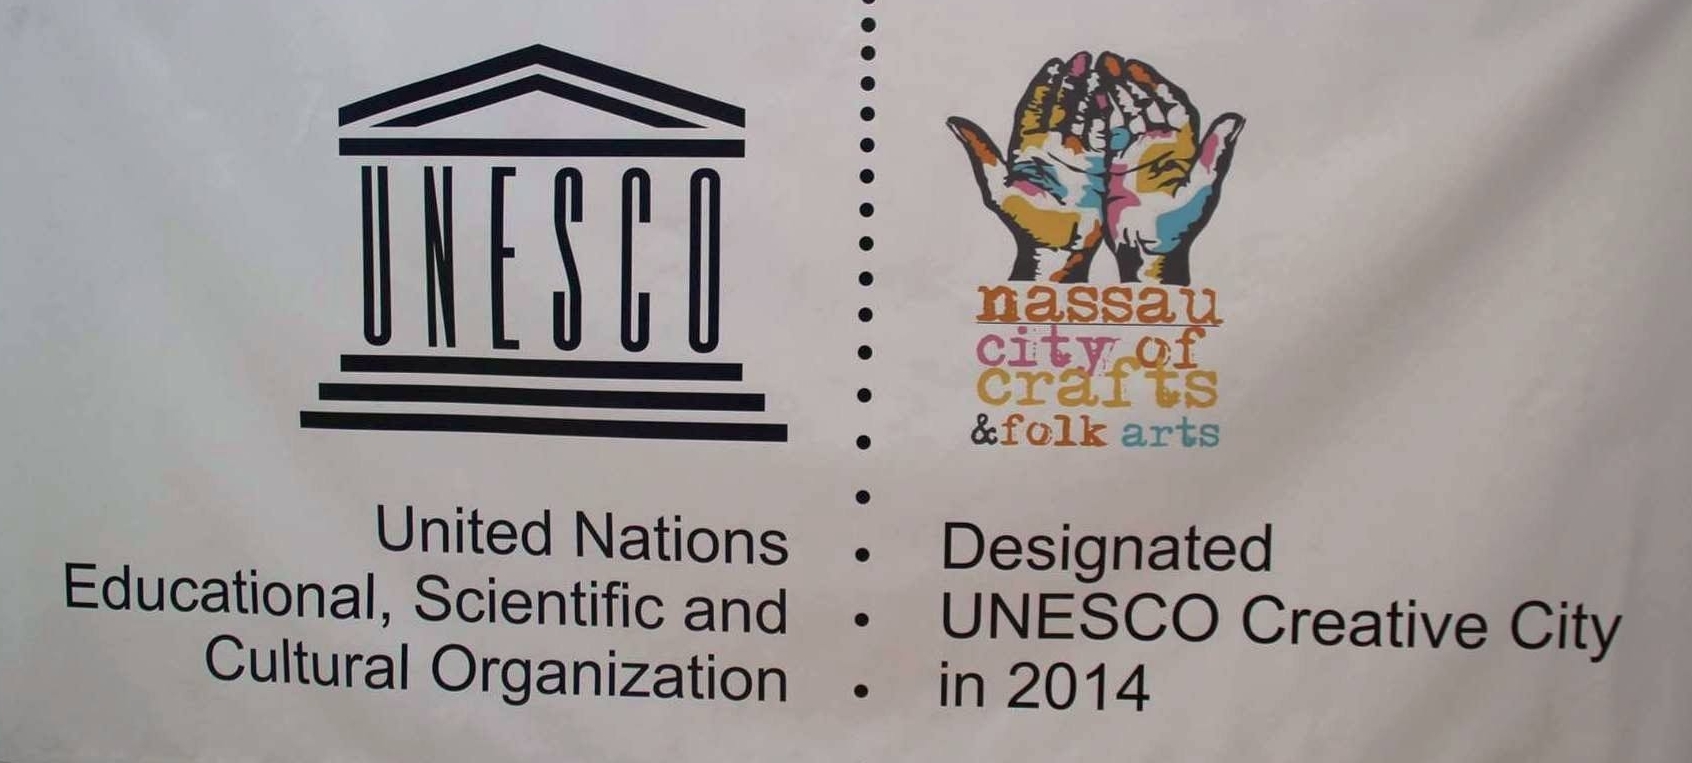 UNESCO sign.JPG